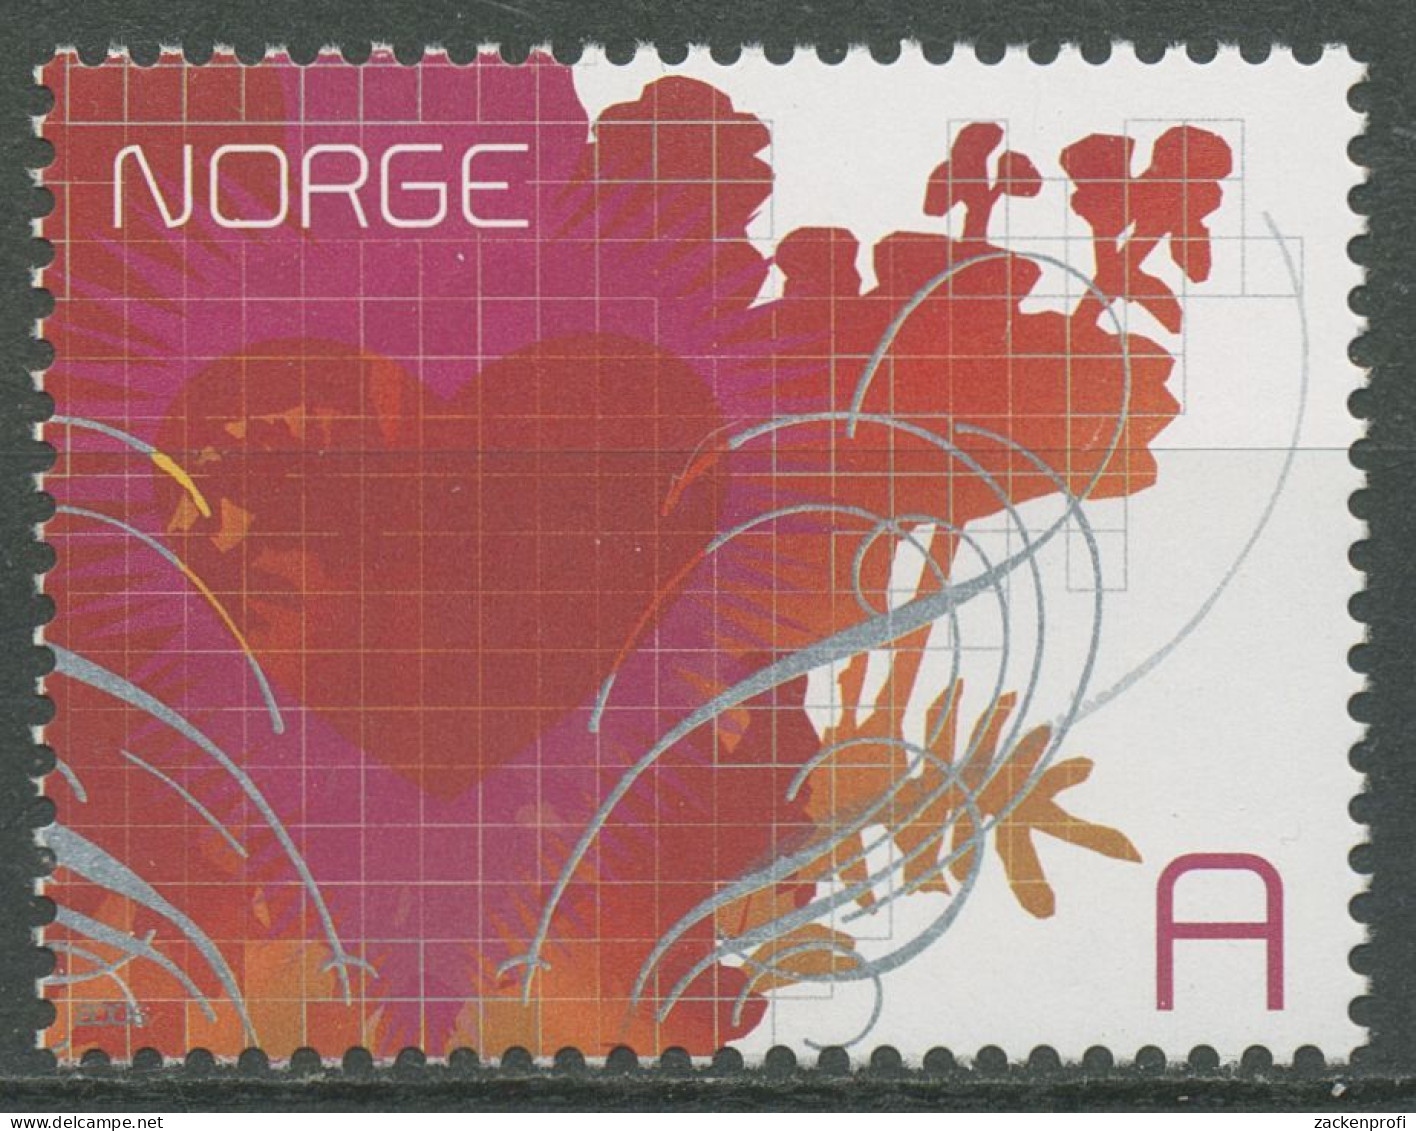 Norwegen 2006 Valentinstag 1560 Postfrisch - Unused Stamps